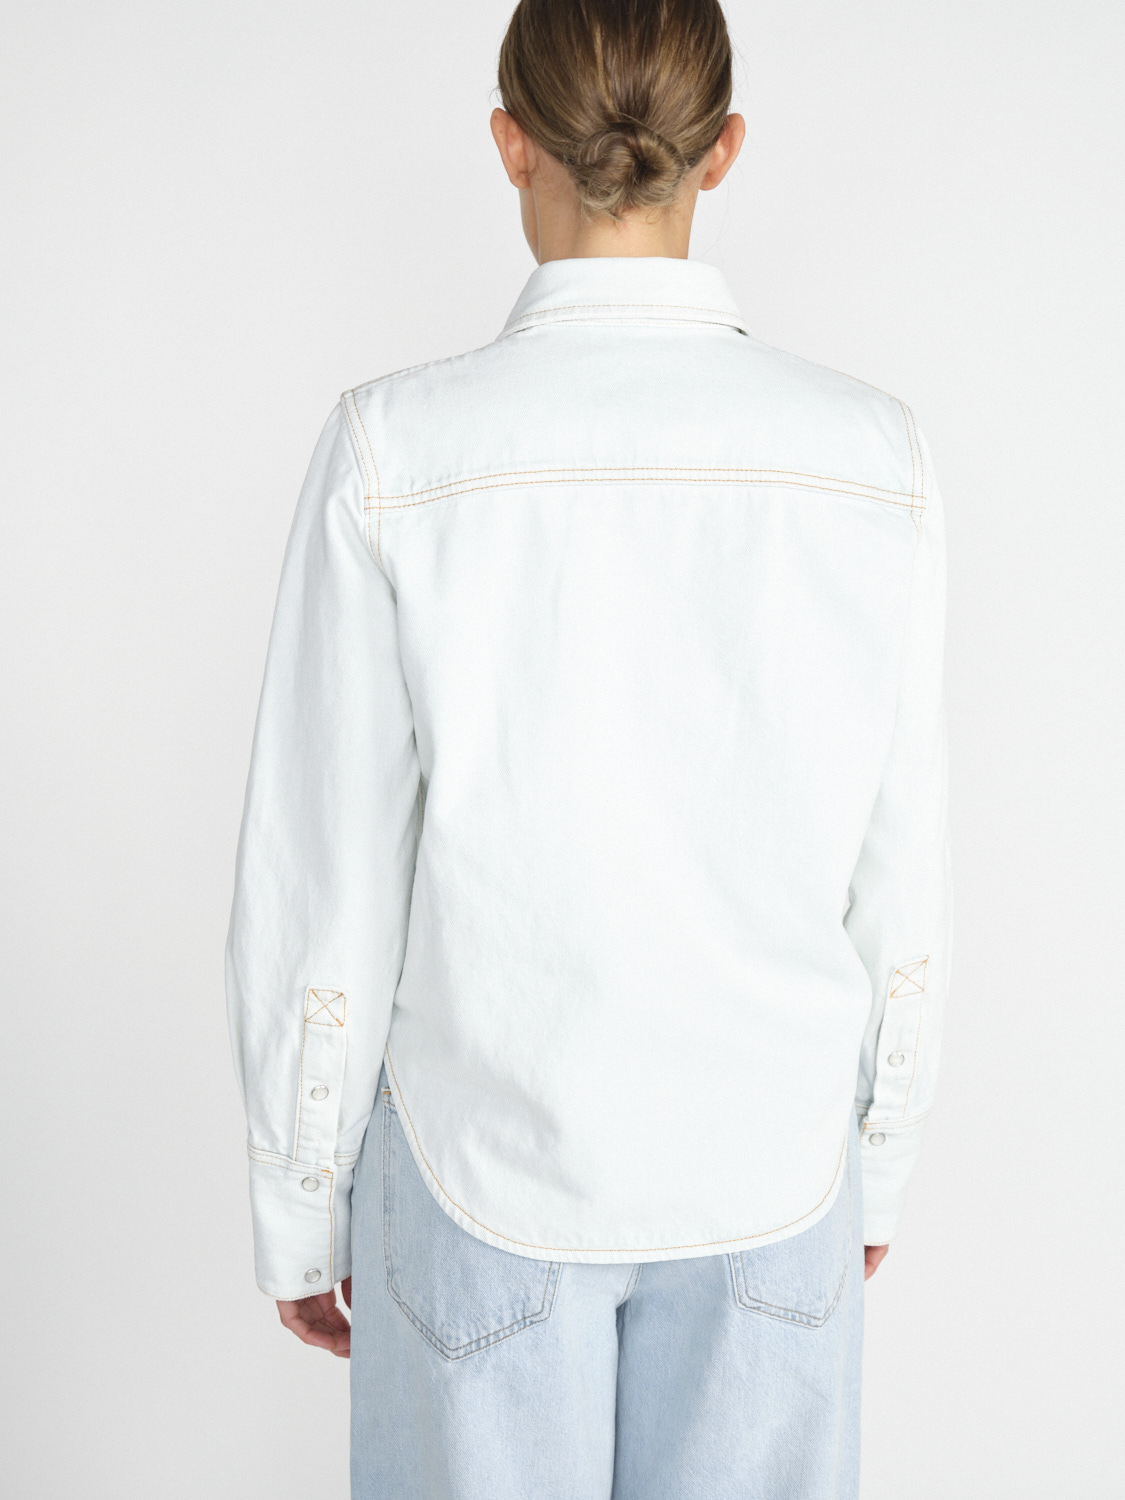 Darkpark Glenn - Cotton denim shirt  white XS/S